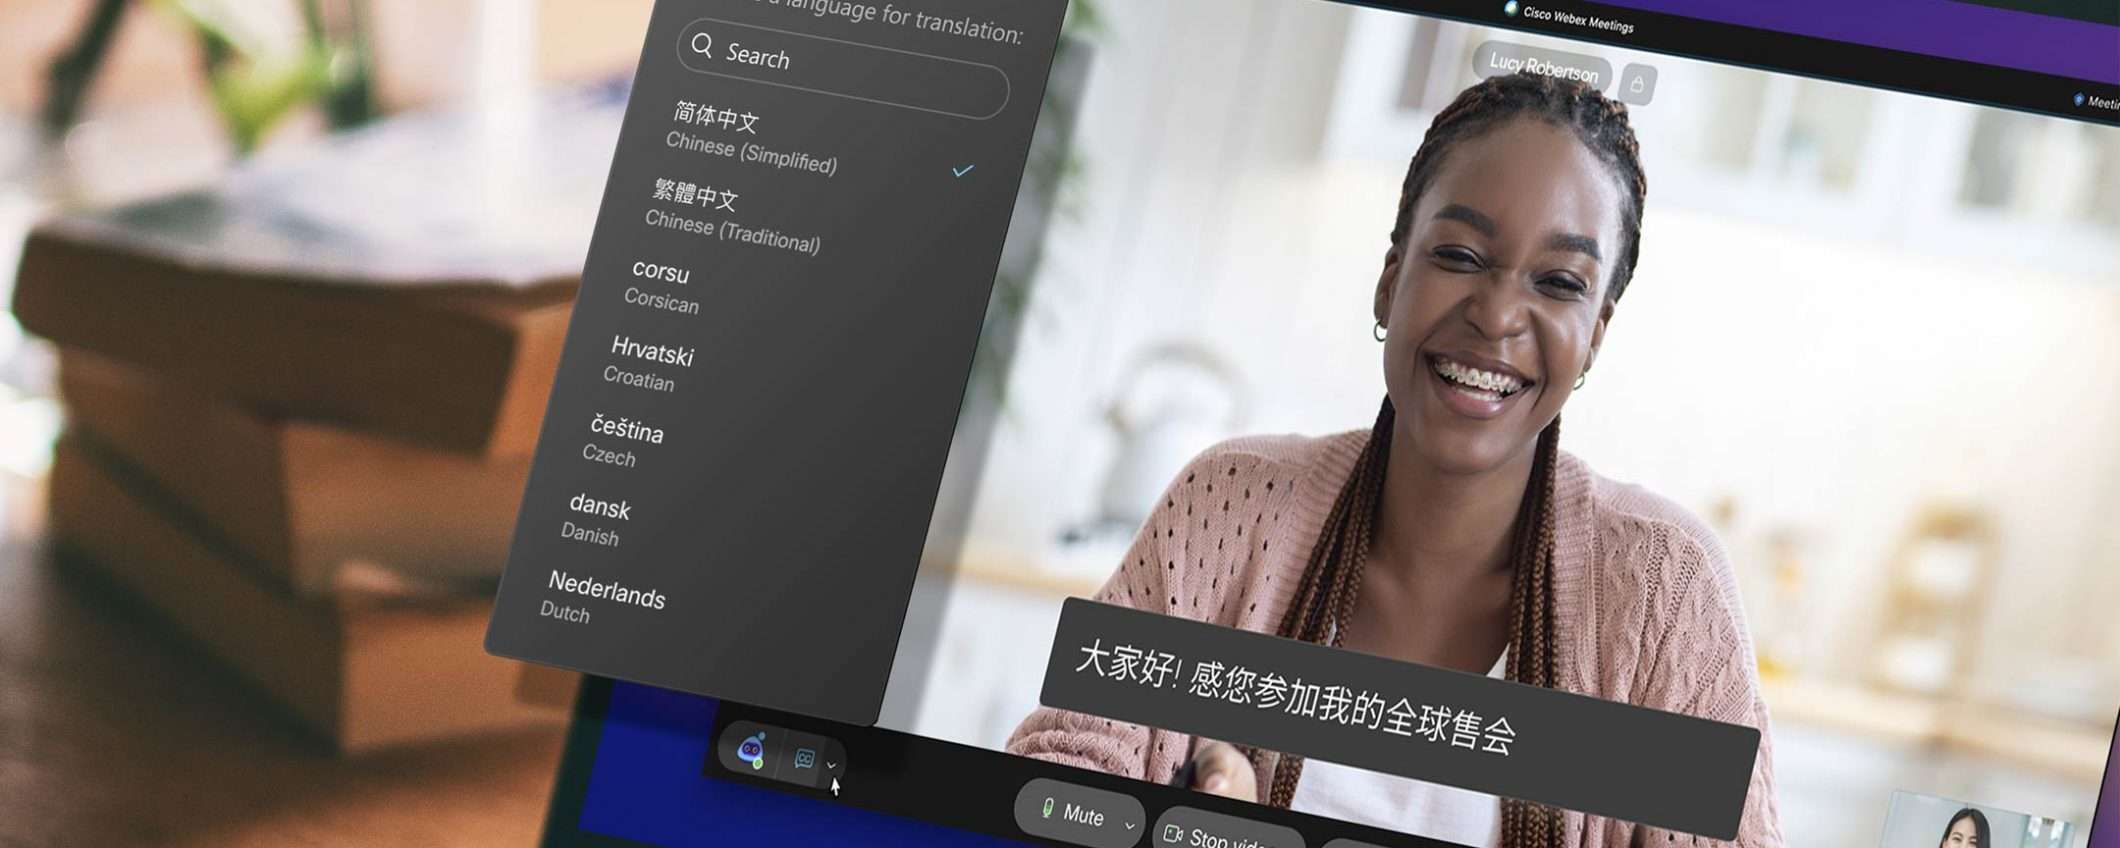 Webex: sottotitoli in tempo reale per 100+ lingue